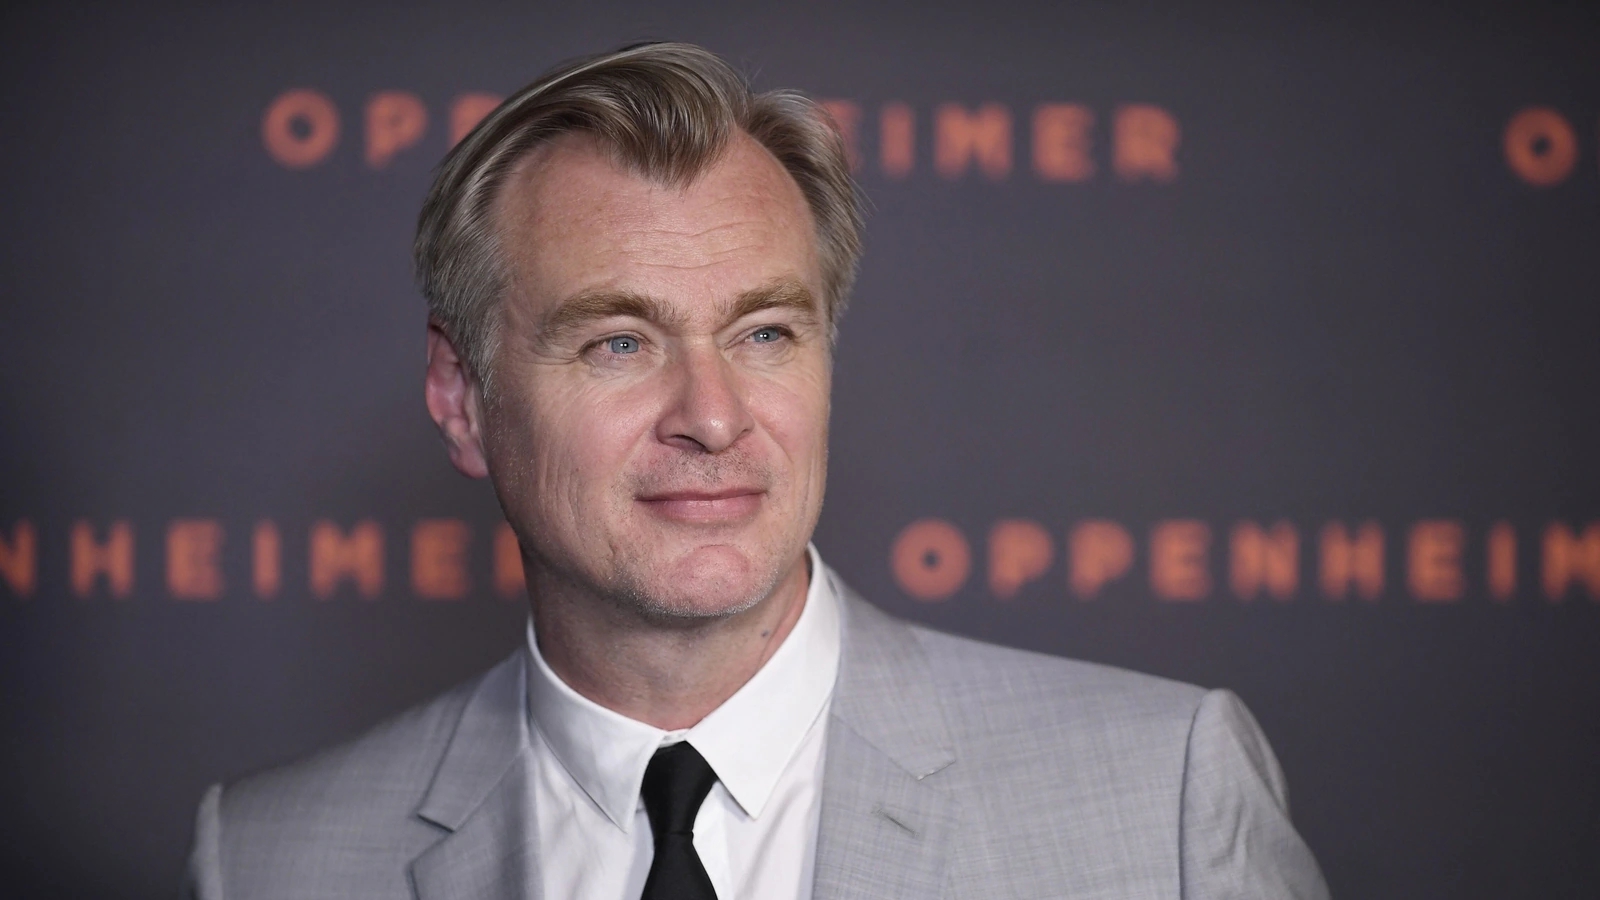 Il cavaliere oscuro: Christopher Nolan dirigerà altri film di supereroi? Ecco la sua risposta